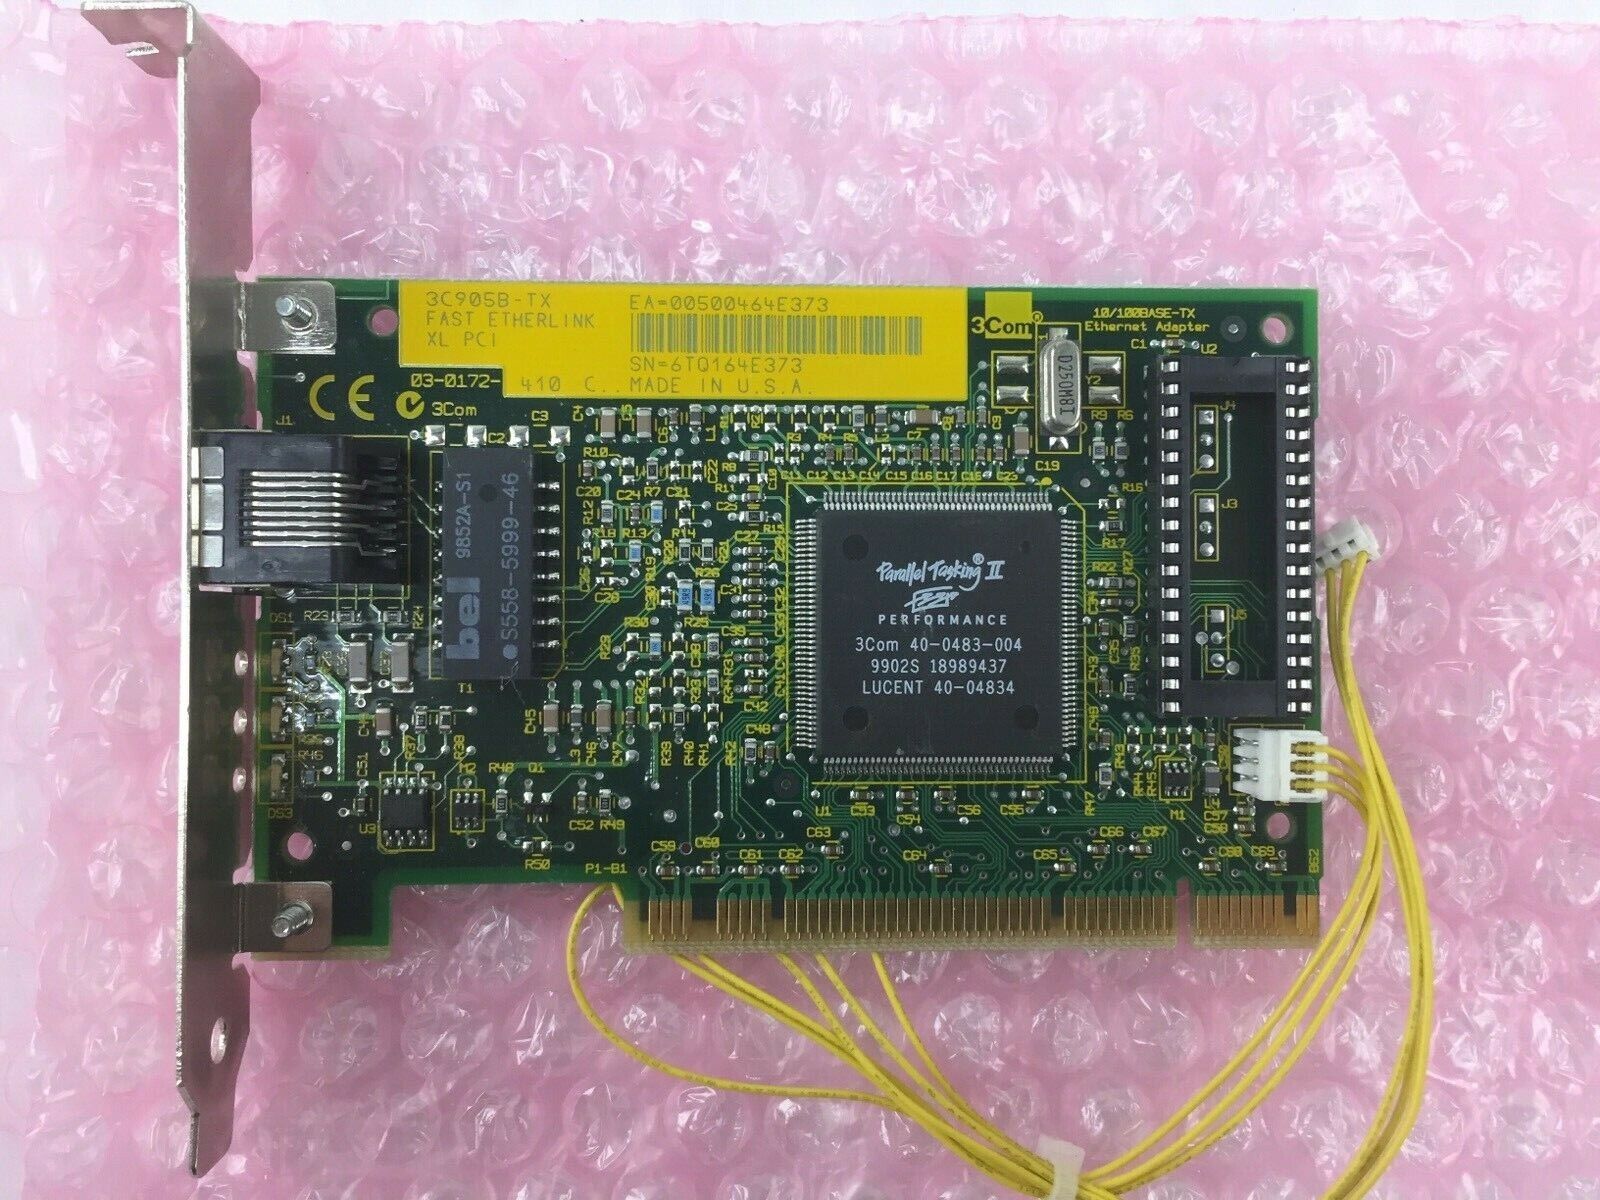 3Com Fast Etherlink XL PCI 10/100 Base-TX Ethernet Adapter 3C905B-TX Card